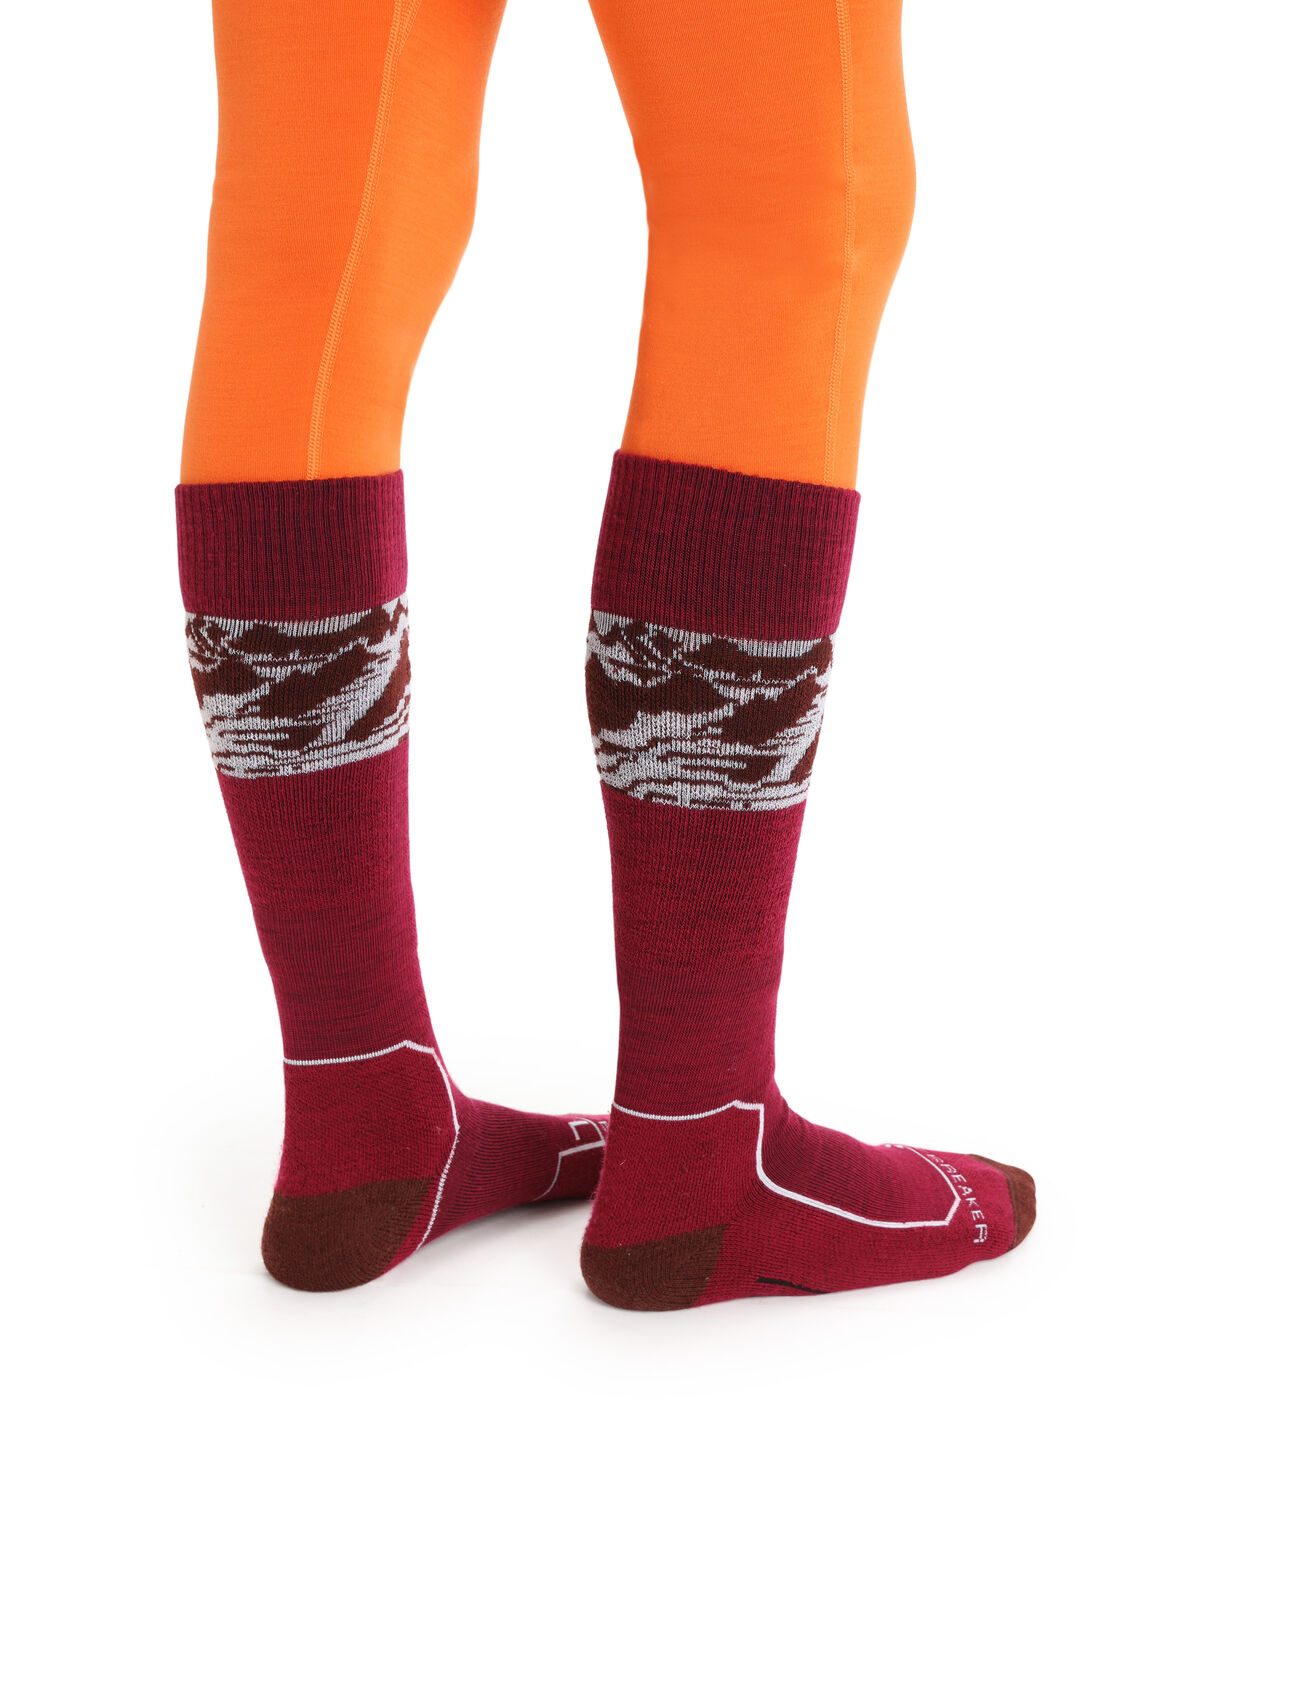 Dames Lichte Ski+ kuitsokken Alps 3D van merinowol De Ski+ Alps 3D sokken zijn licht gevoerde skisokken van merinowol. De lichte sokken bieden steun tot over de kuit en zijn gemaakt van een stevige, ademende mix van merinowol.